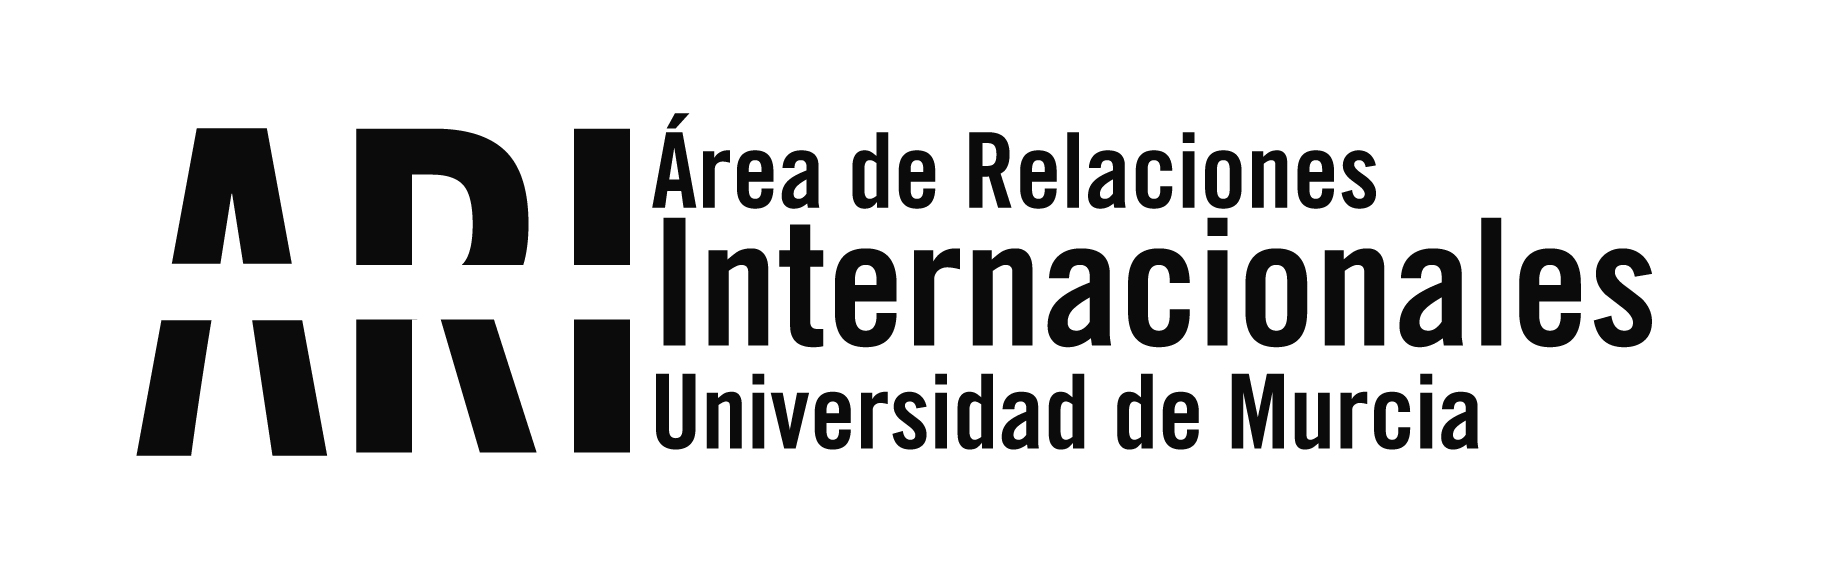 La UENP de Brasil visita la Facultad de Derecho de la UM - Área de Relaciones Internacionales